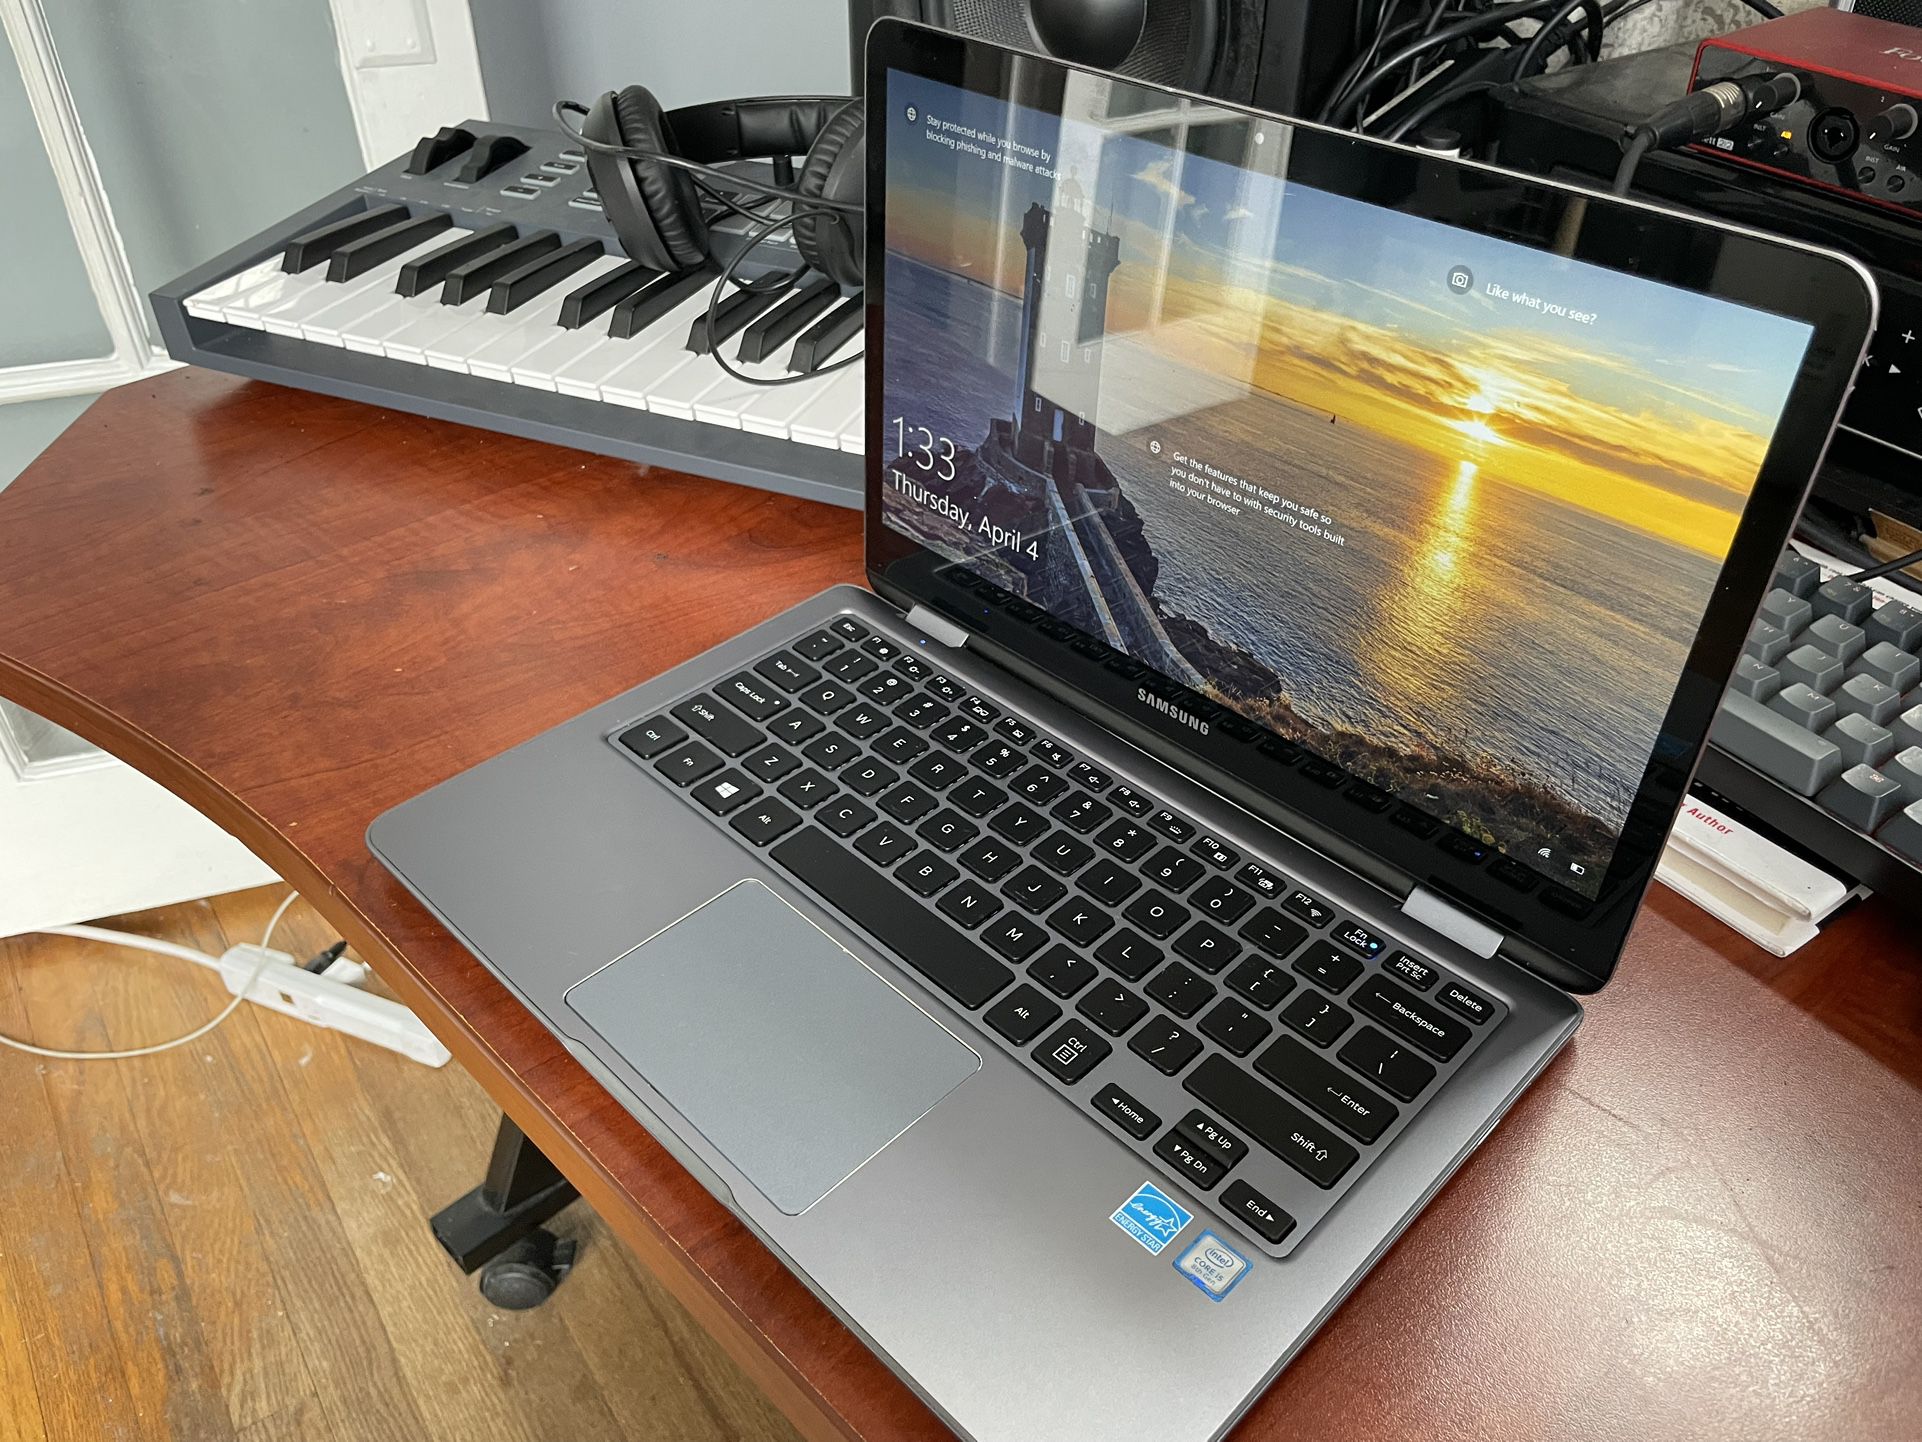 Samsung Notebook 13.3” touch screen laptop